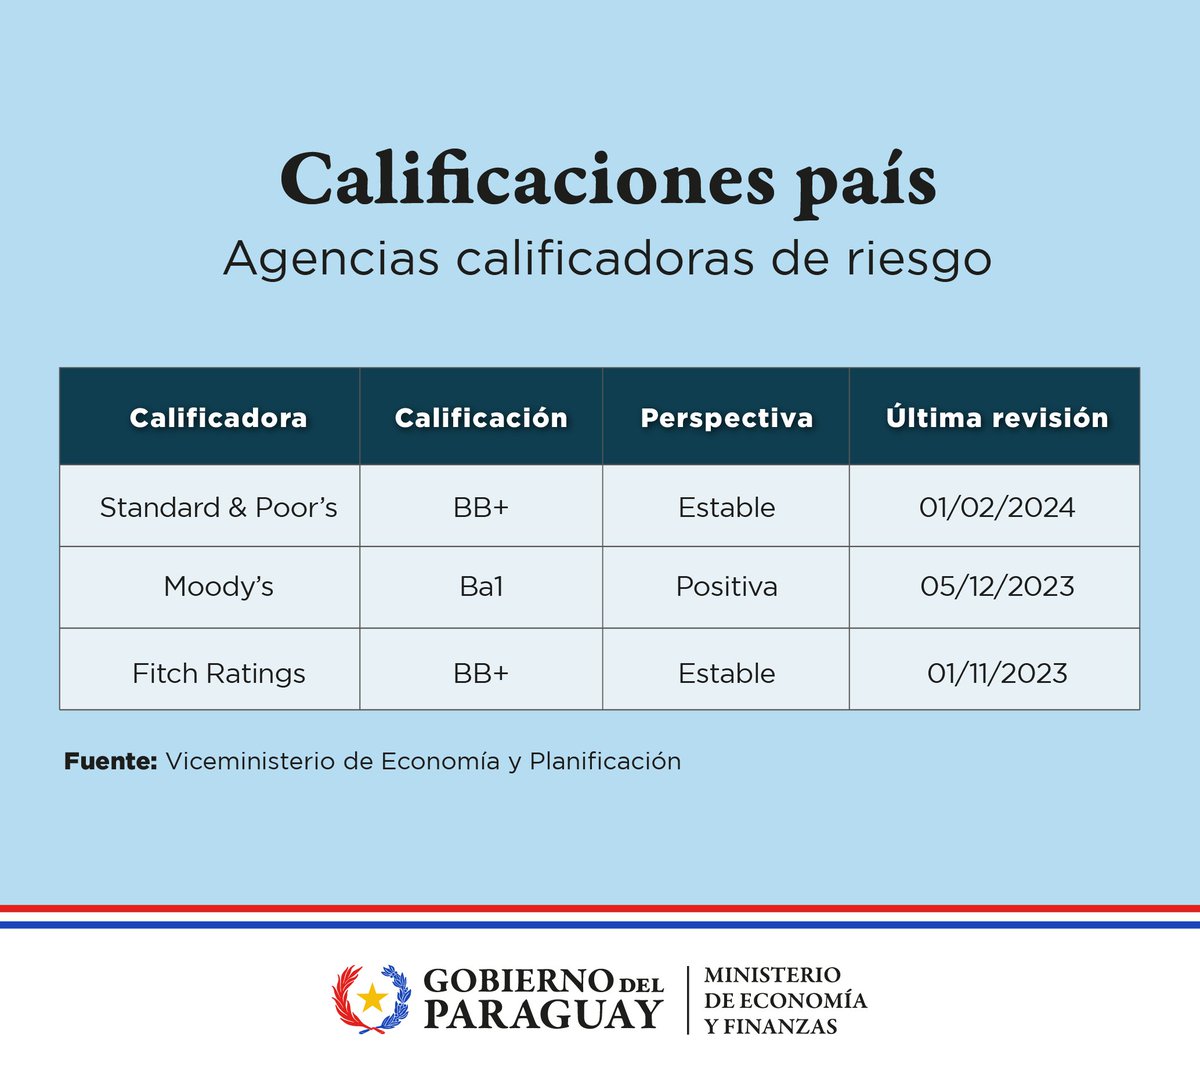 La Calificadora Standard & Poor´s aumentó la calificación crediticia del país🇵🇾 a BB+. Así también, Paraguay ha logrado mantener su calificación crediticia, así como la perspectiva estable y positiva con las calificadoras @FitchRatings y @MoodysInvSvc.

➡️ lc.cx/6O_8mY